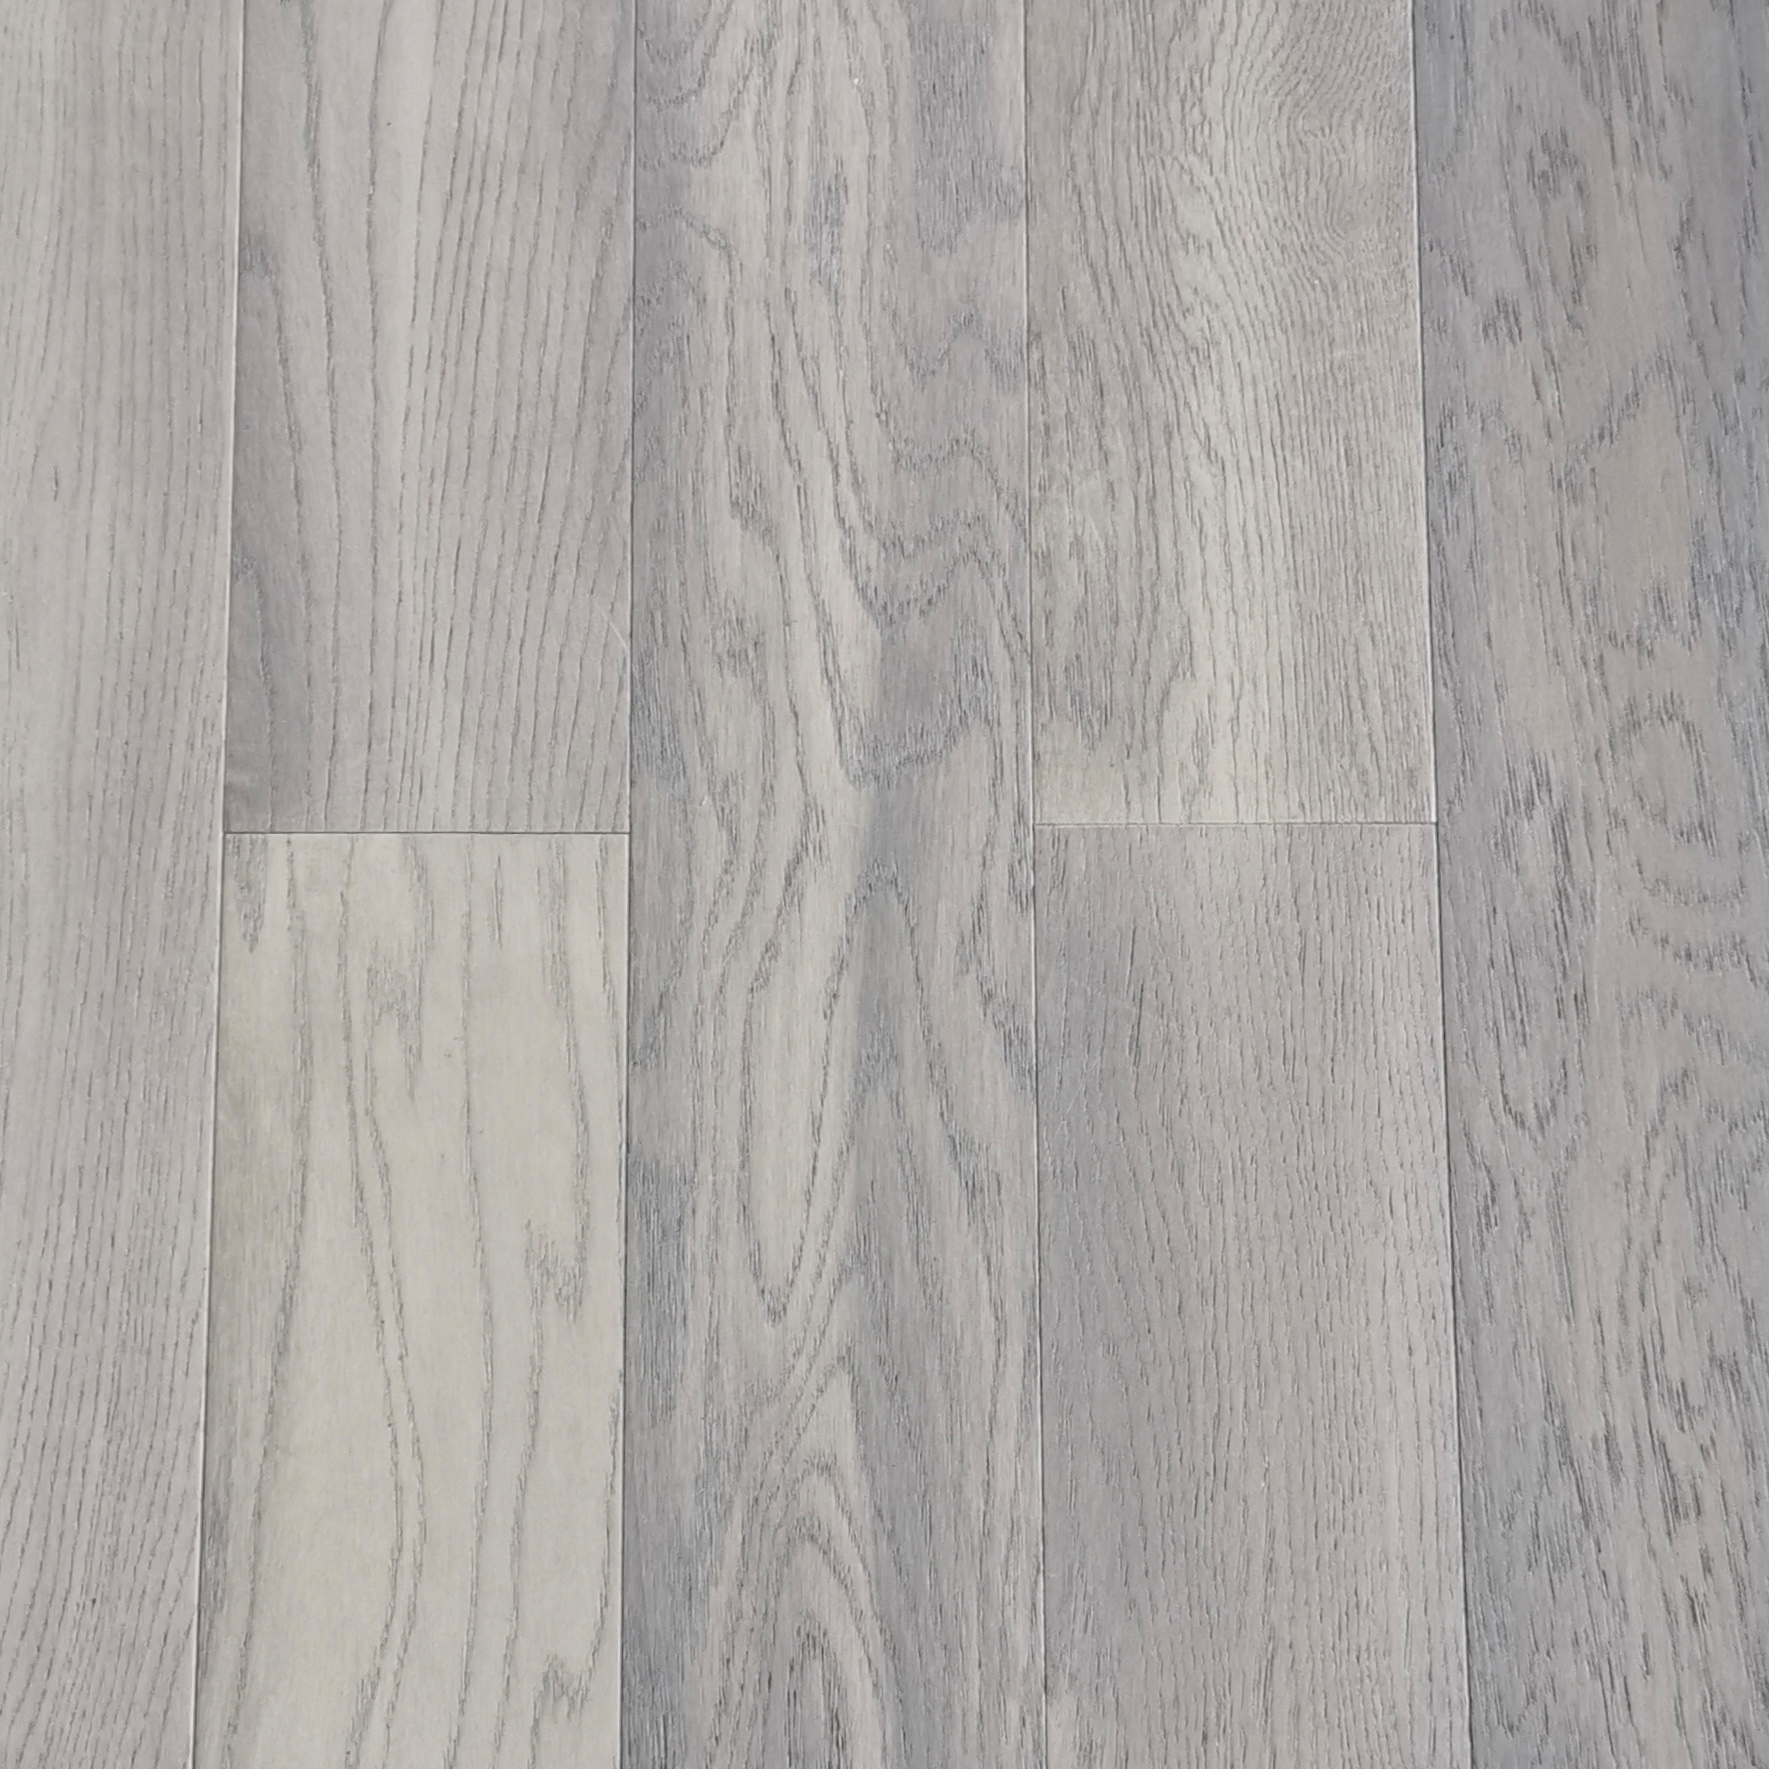 Wholesale Dealers of Quality Wood Floors -
 100% Waterproof Luxury Wood Veneer SPC Flooring with SPC Core Base – Kangton